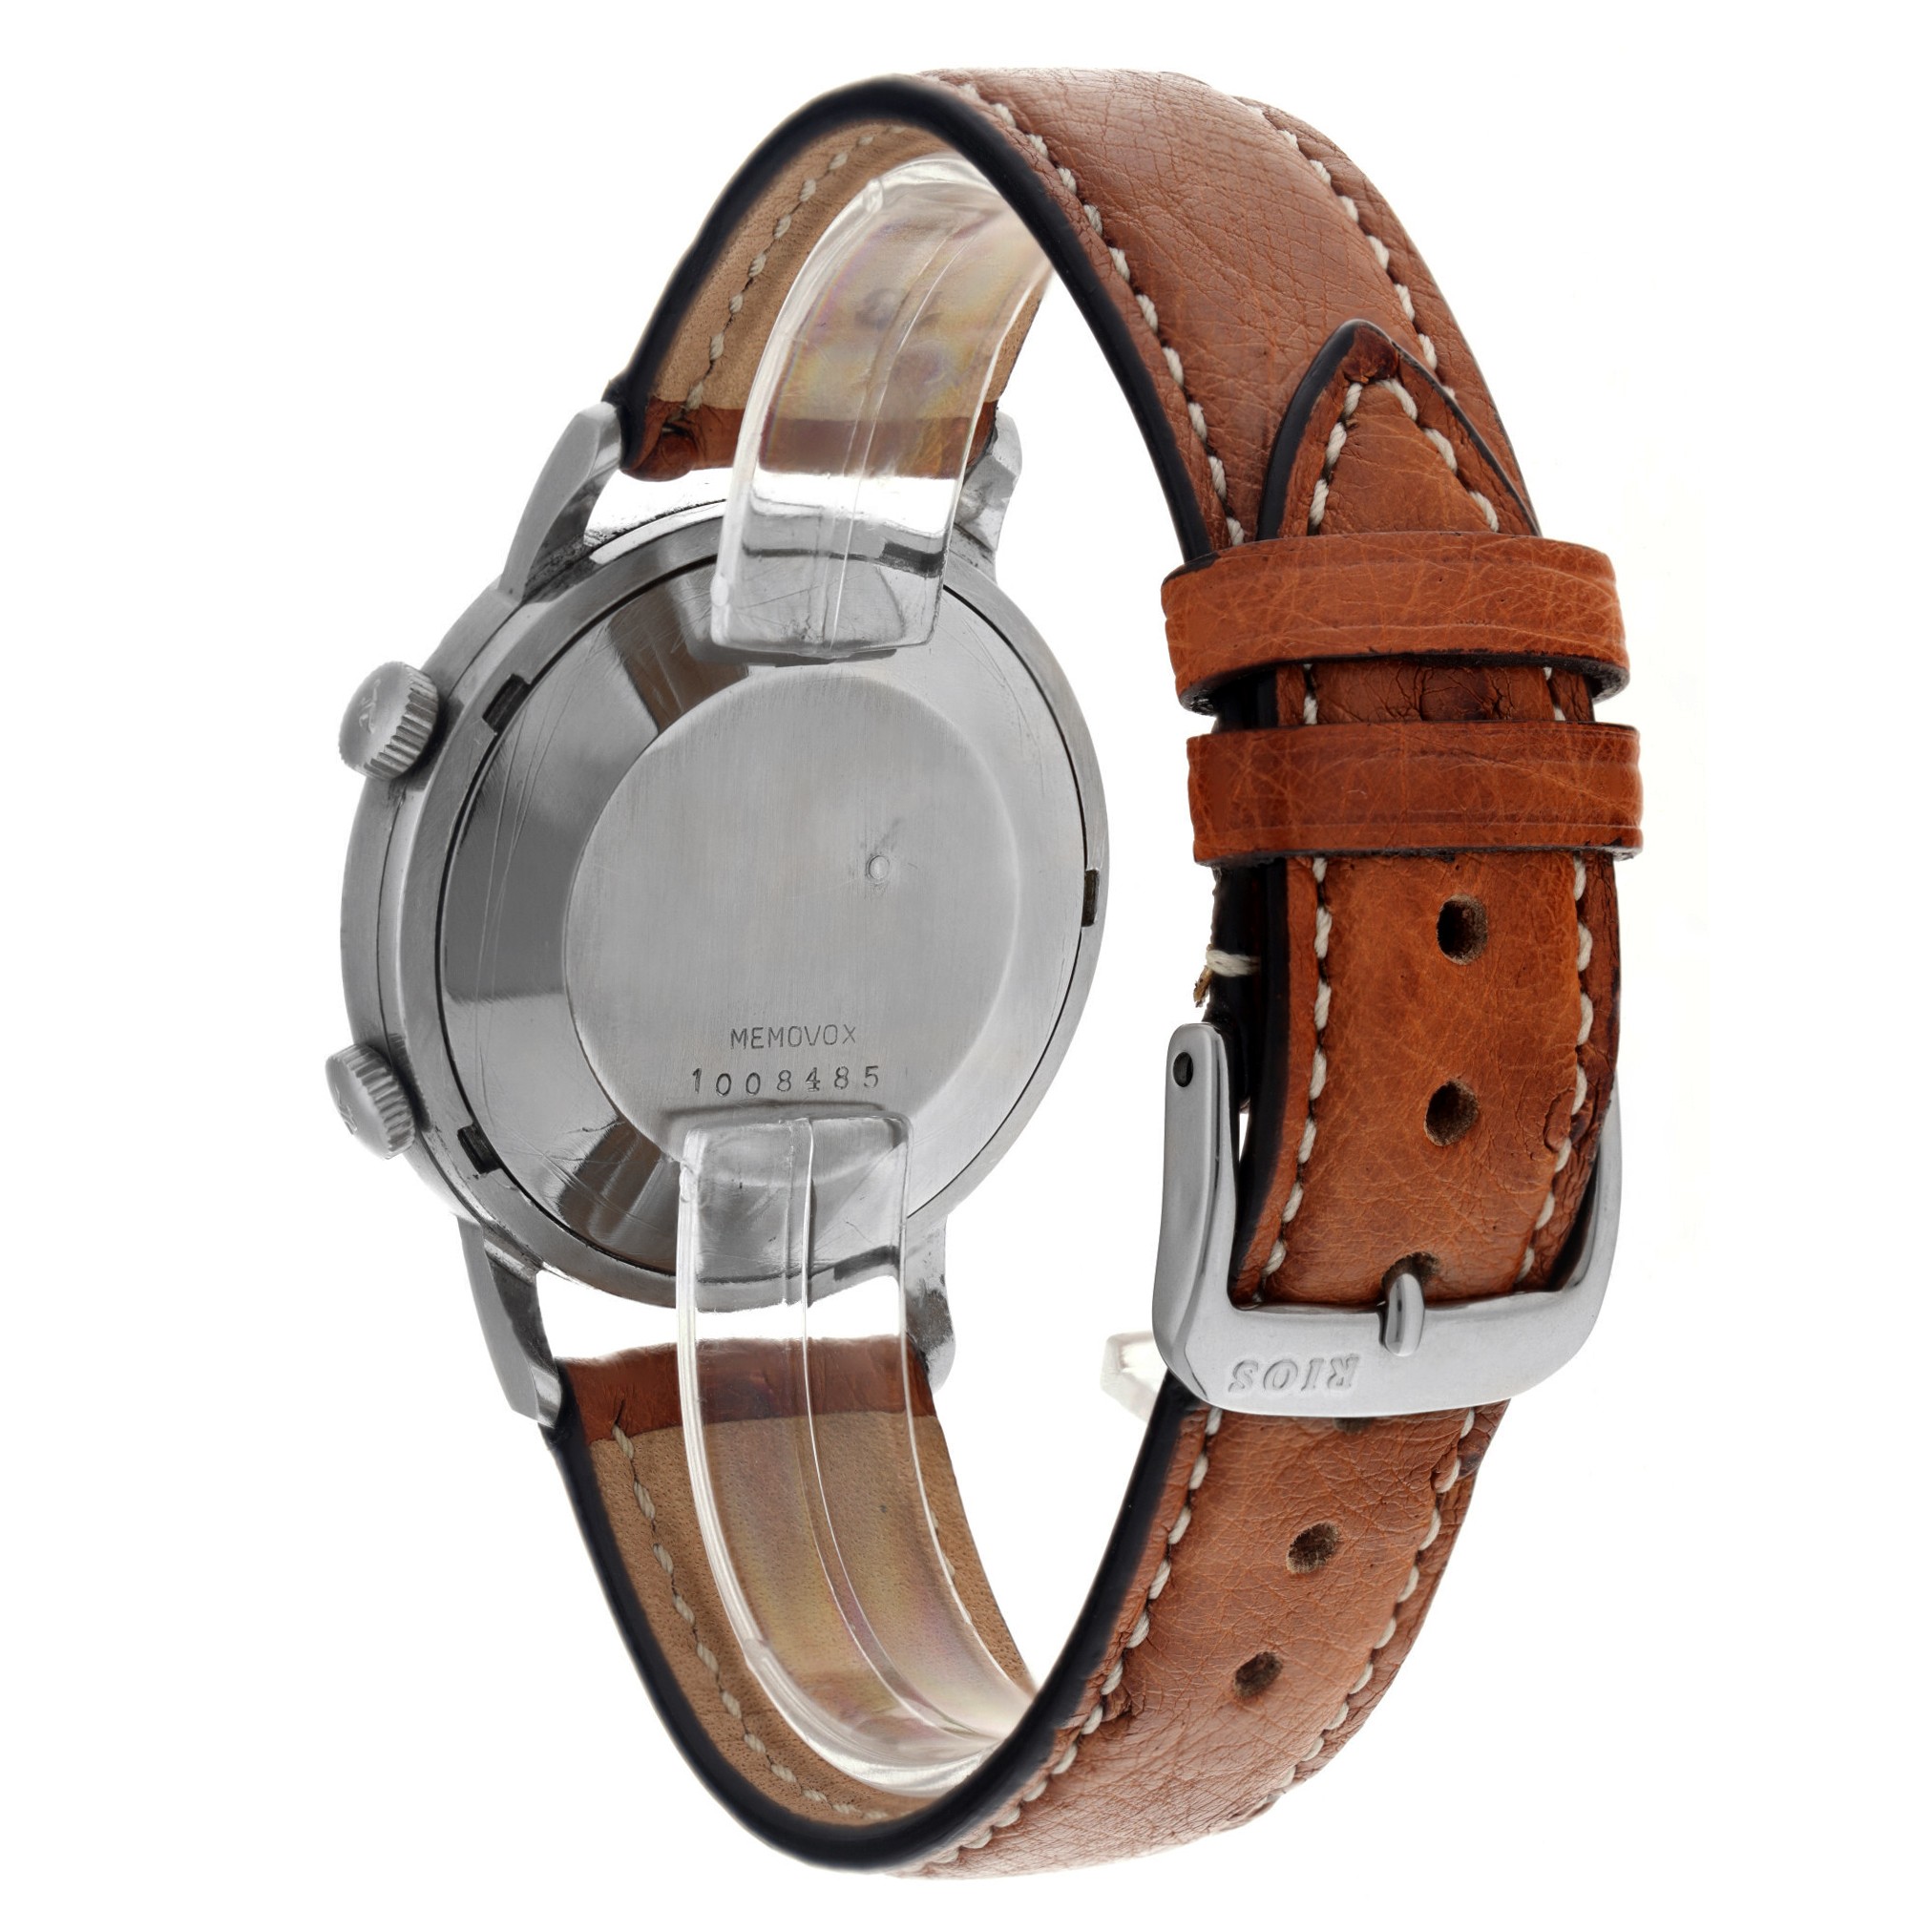 Jaeger-LeCoultre Memovox E855 - Men's wristwatch. - Image 3 of 5